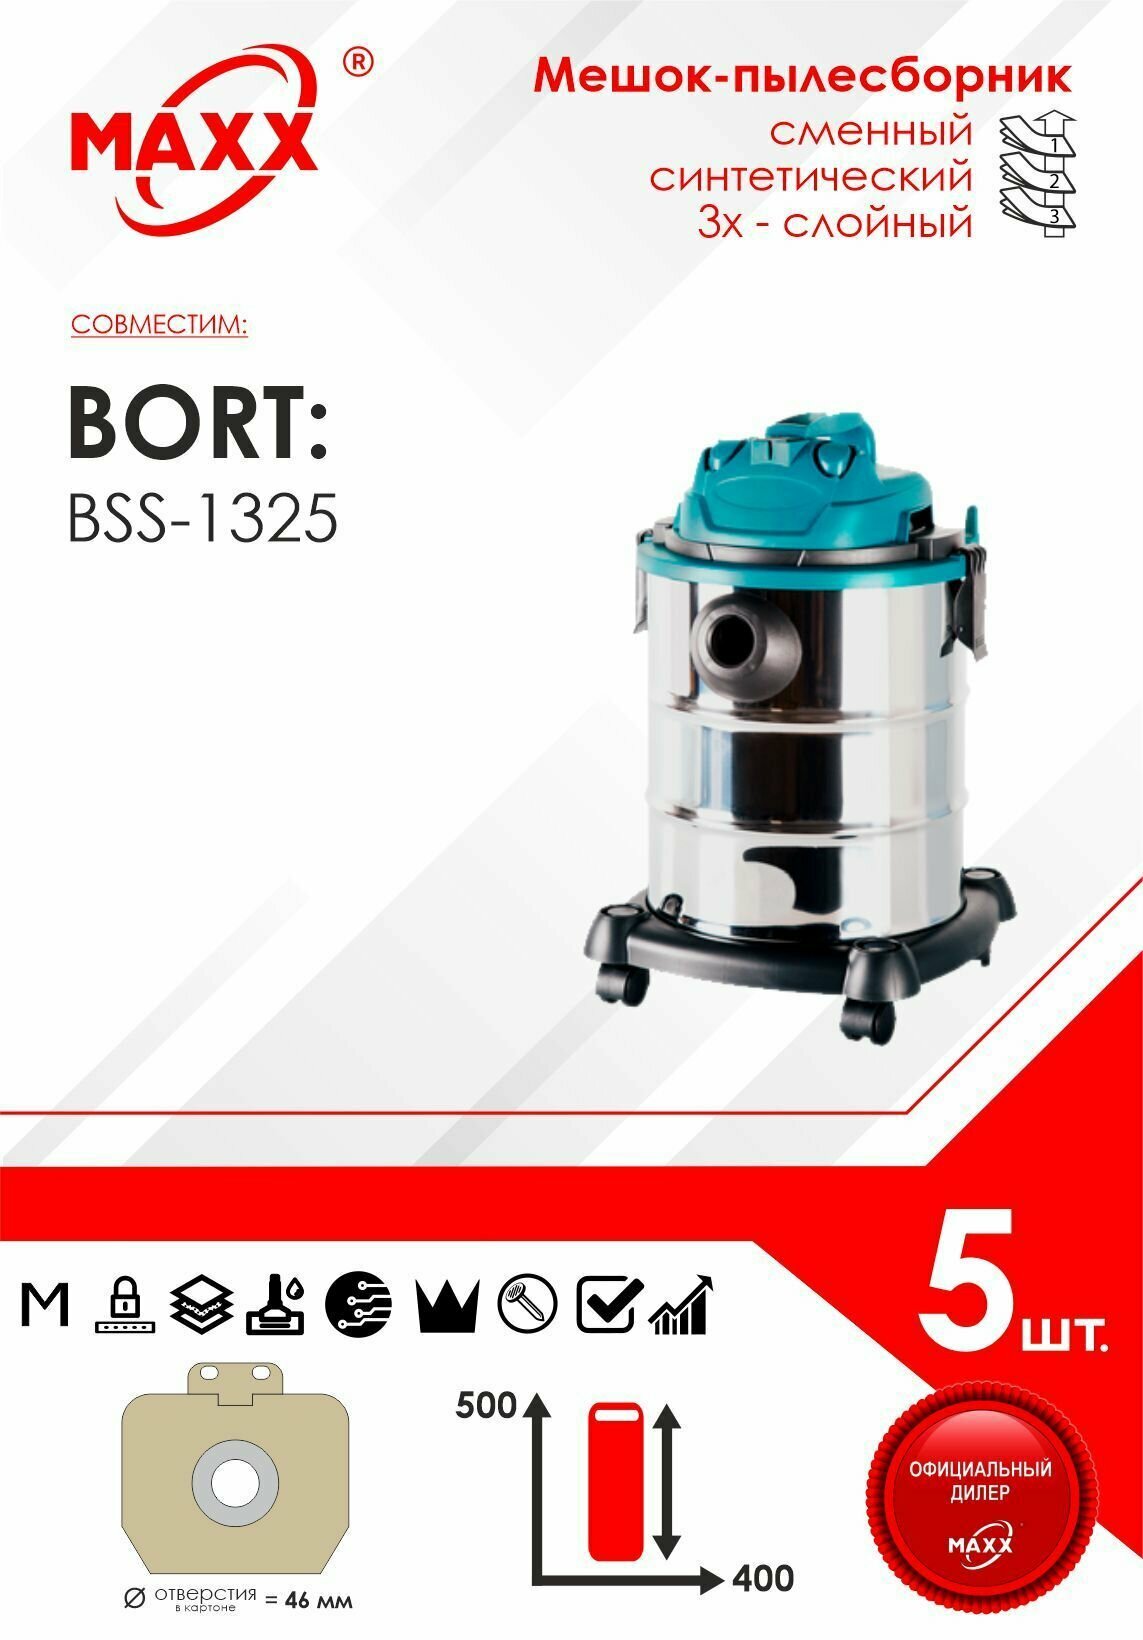 Мешок - пылесборник 5 шт. для пылесоса Bort BSS-1325